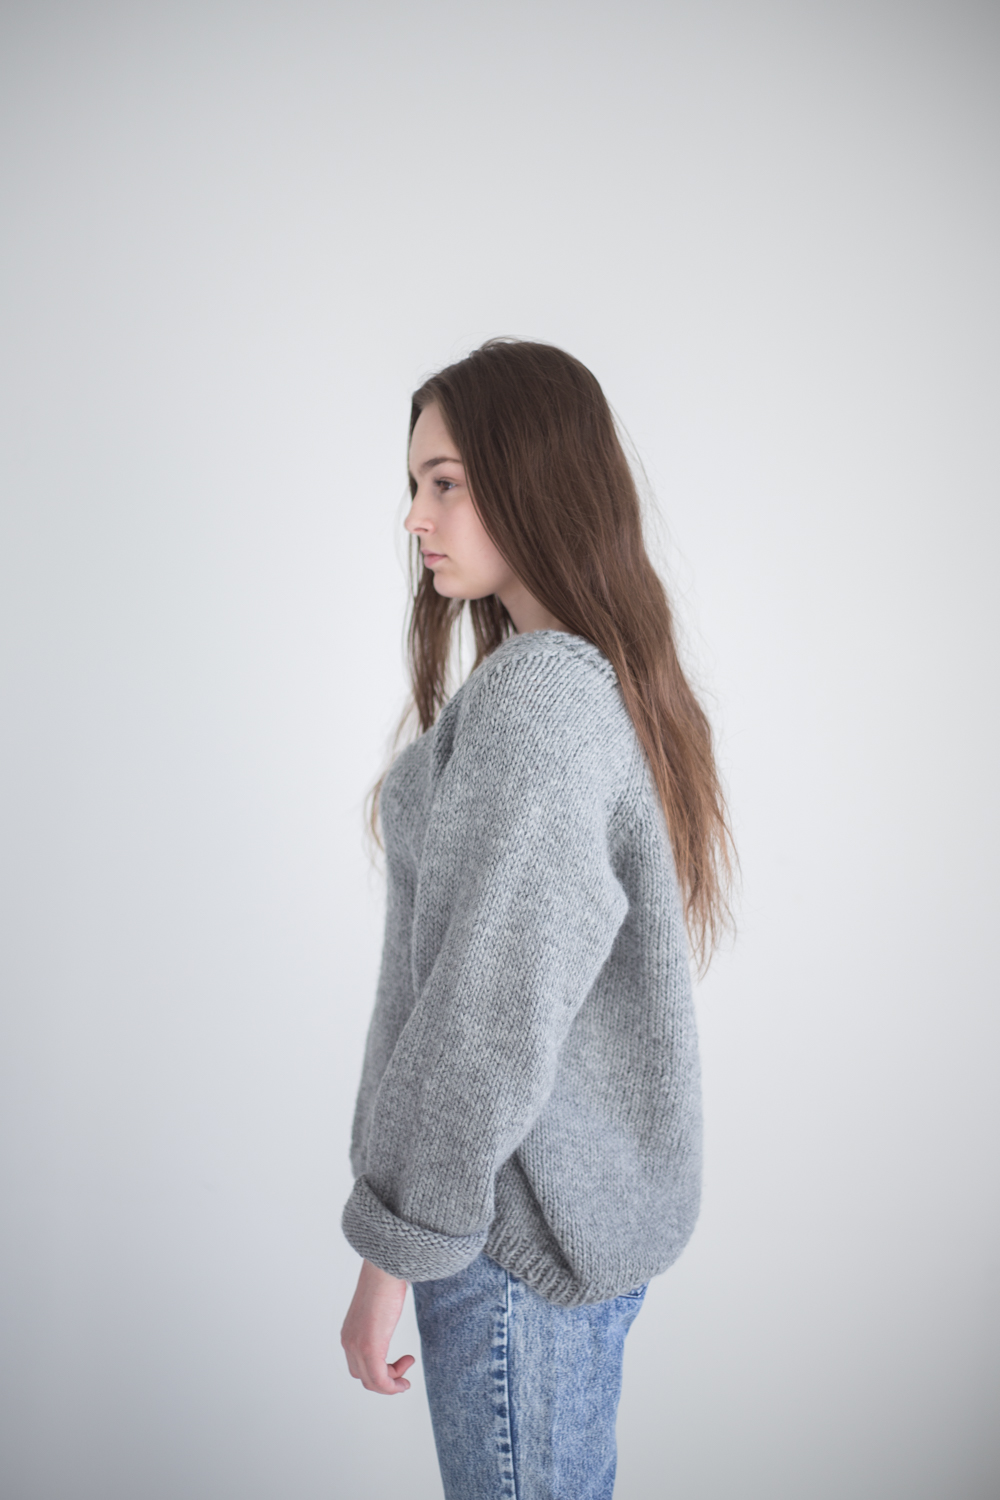 Lea sweater v-neck knitting pattern - Lea Sweater | V-neck sweater knitting kit - by HipKnitShop - 07/05/2018